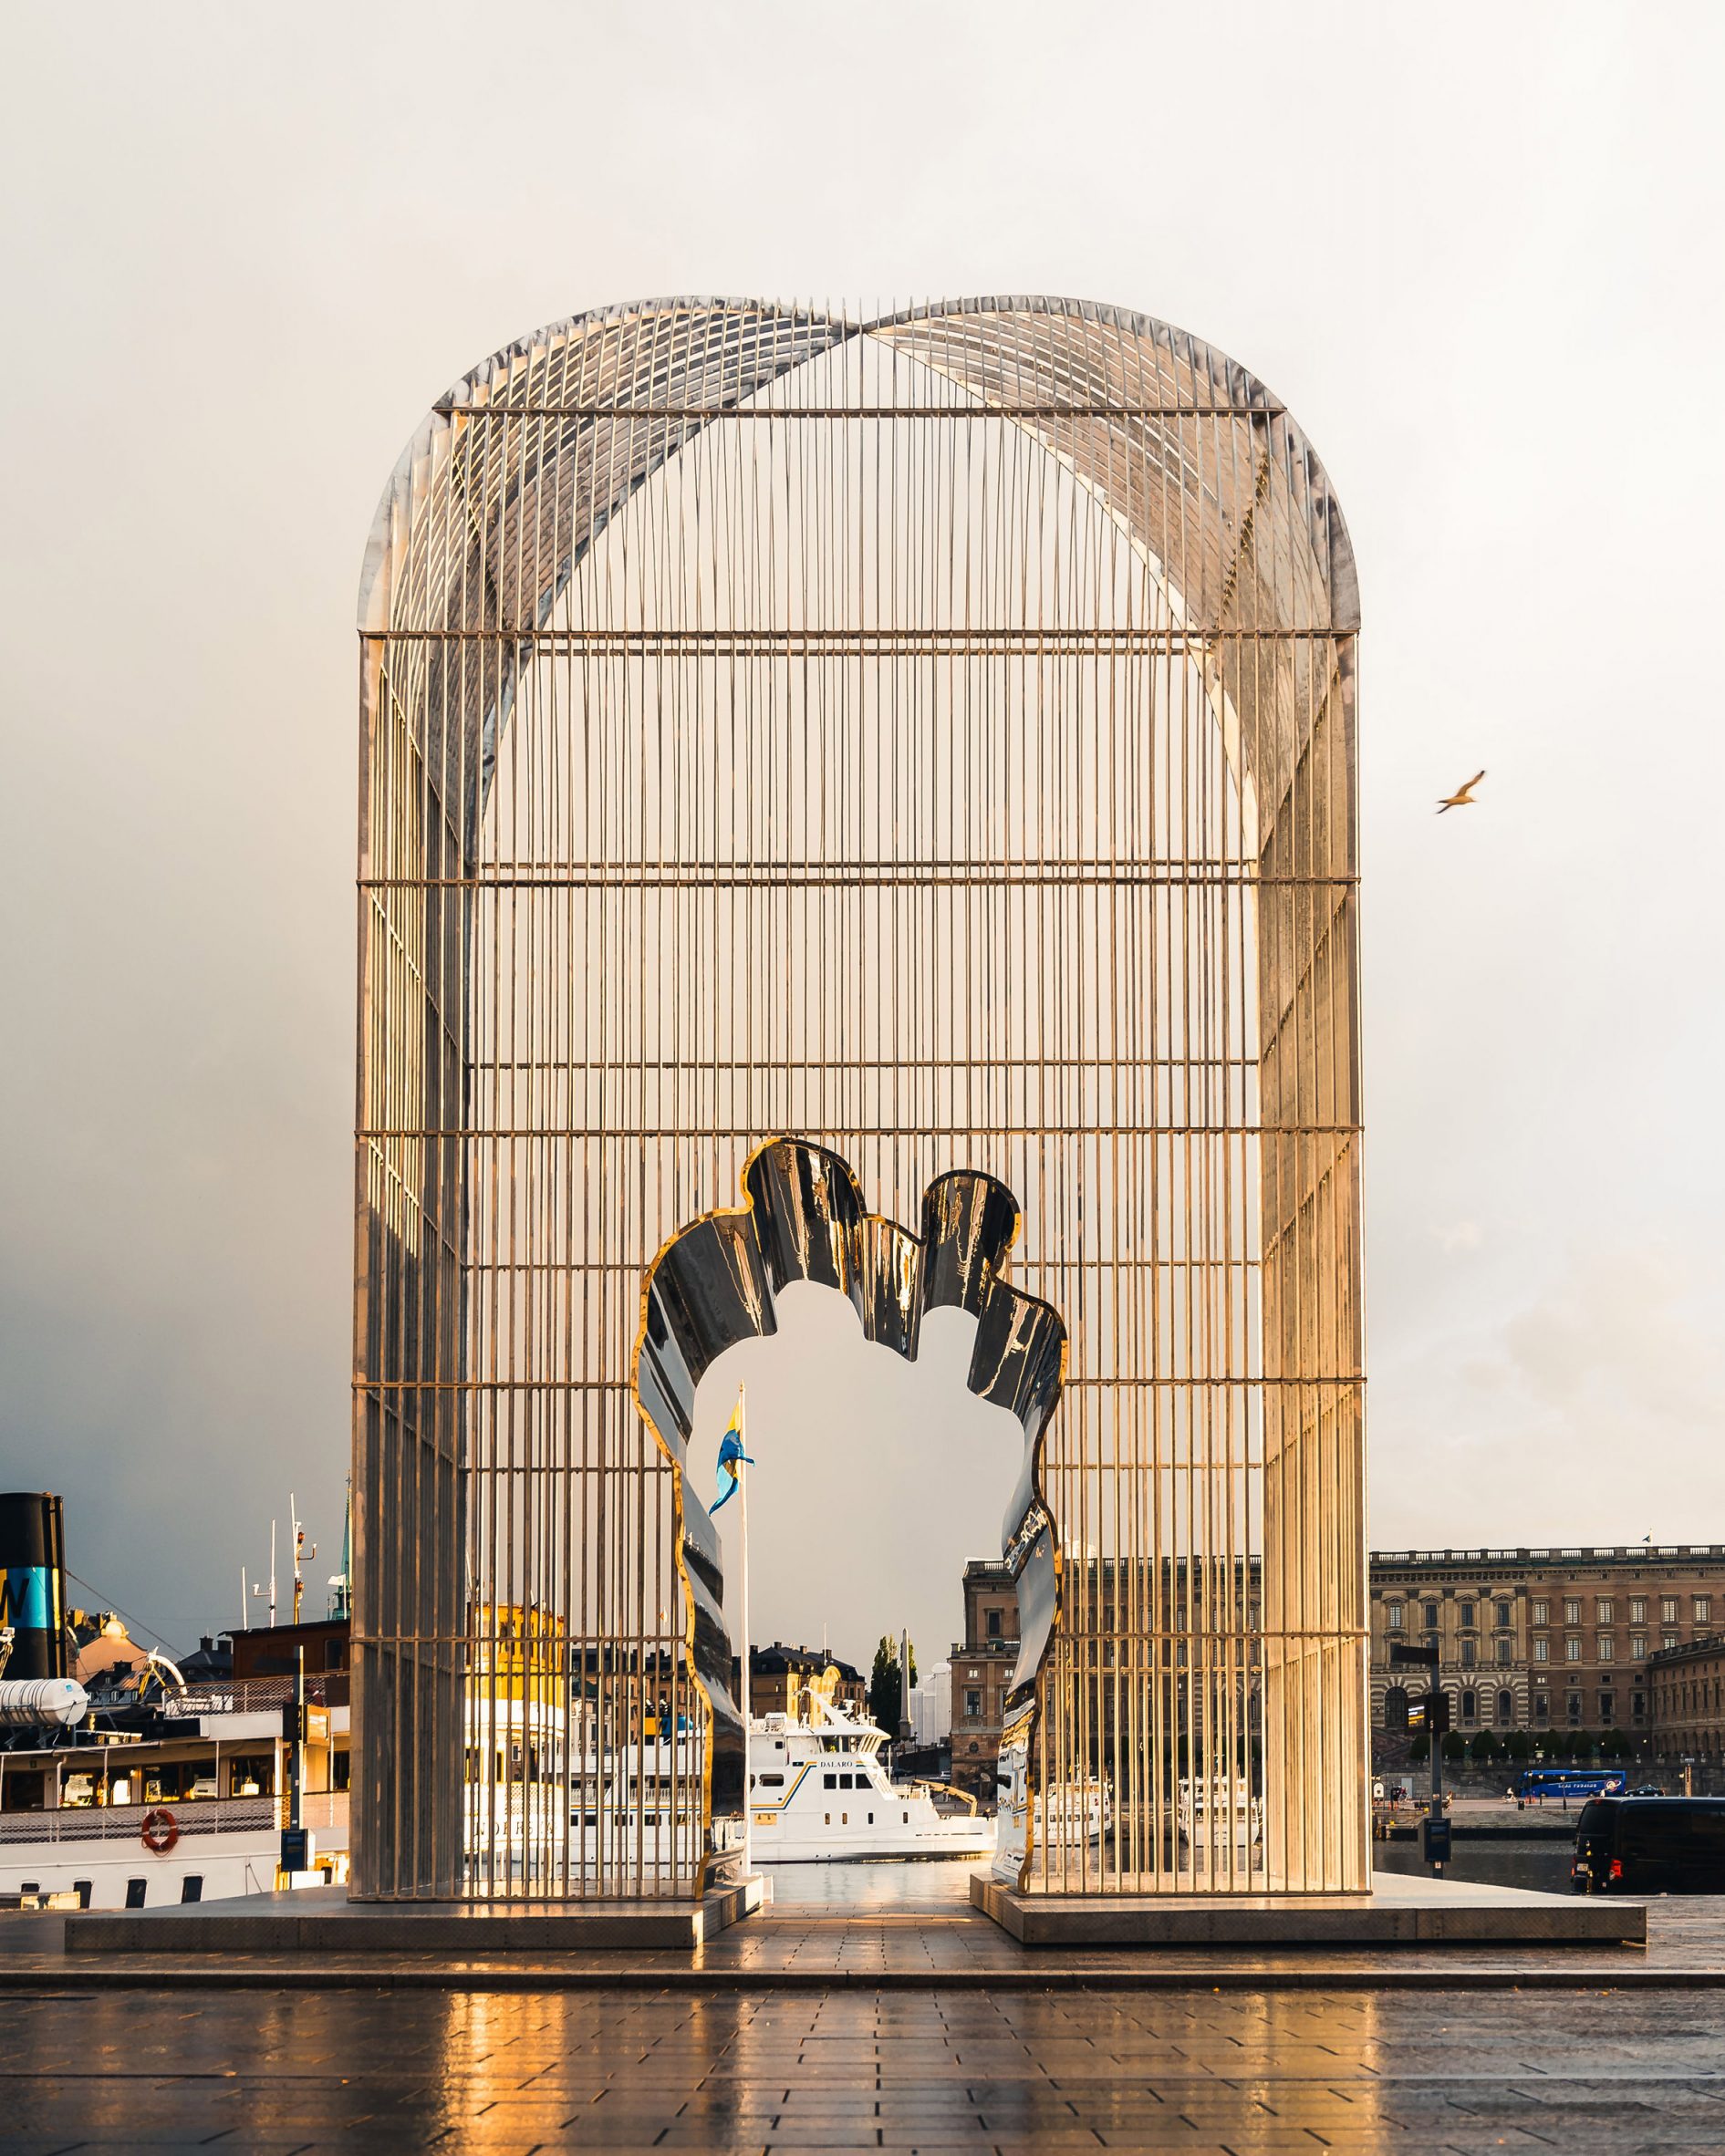 Ai Weiwei's steel sculpture Arch